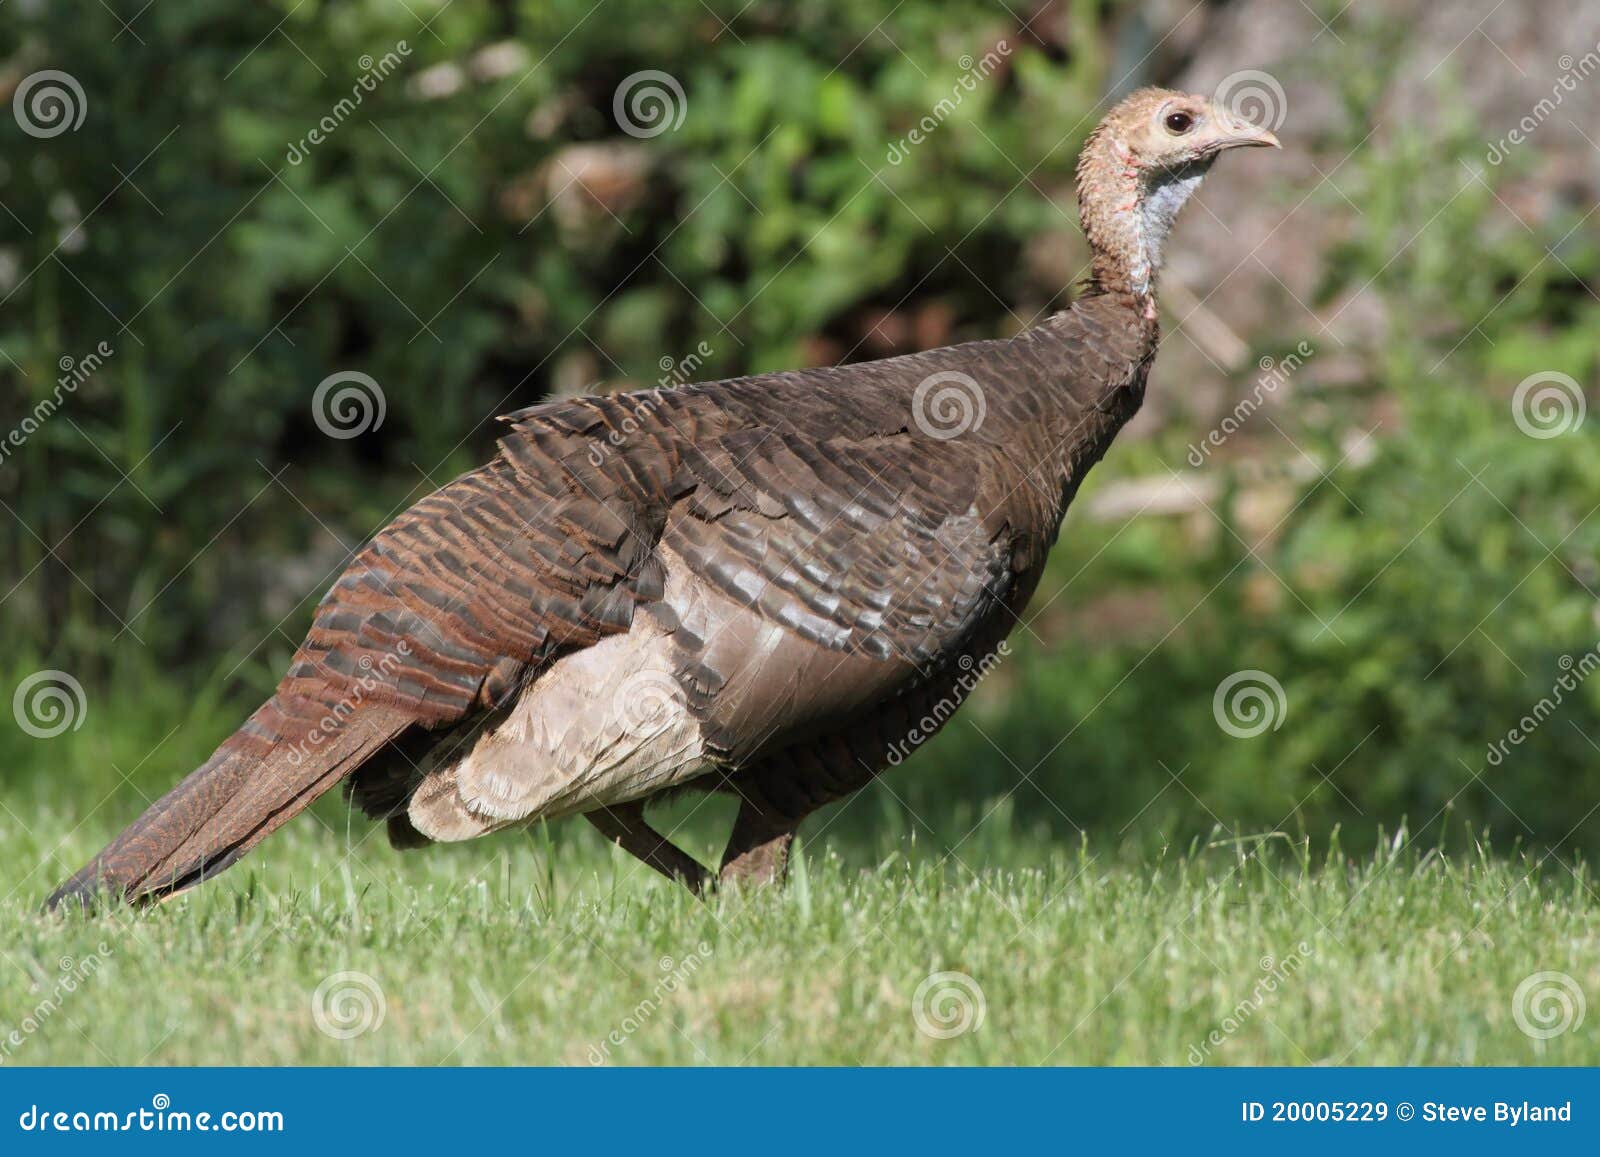 wild turkey (meleagris gallopavo)